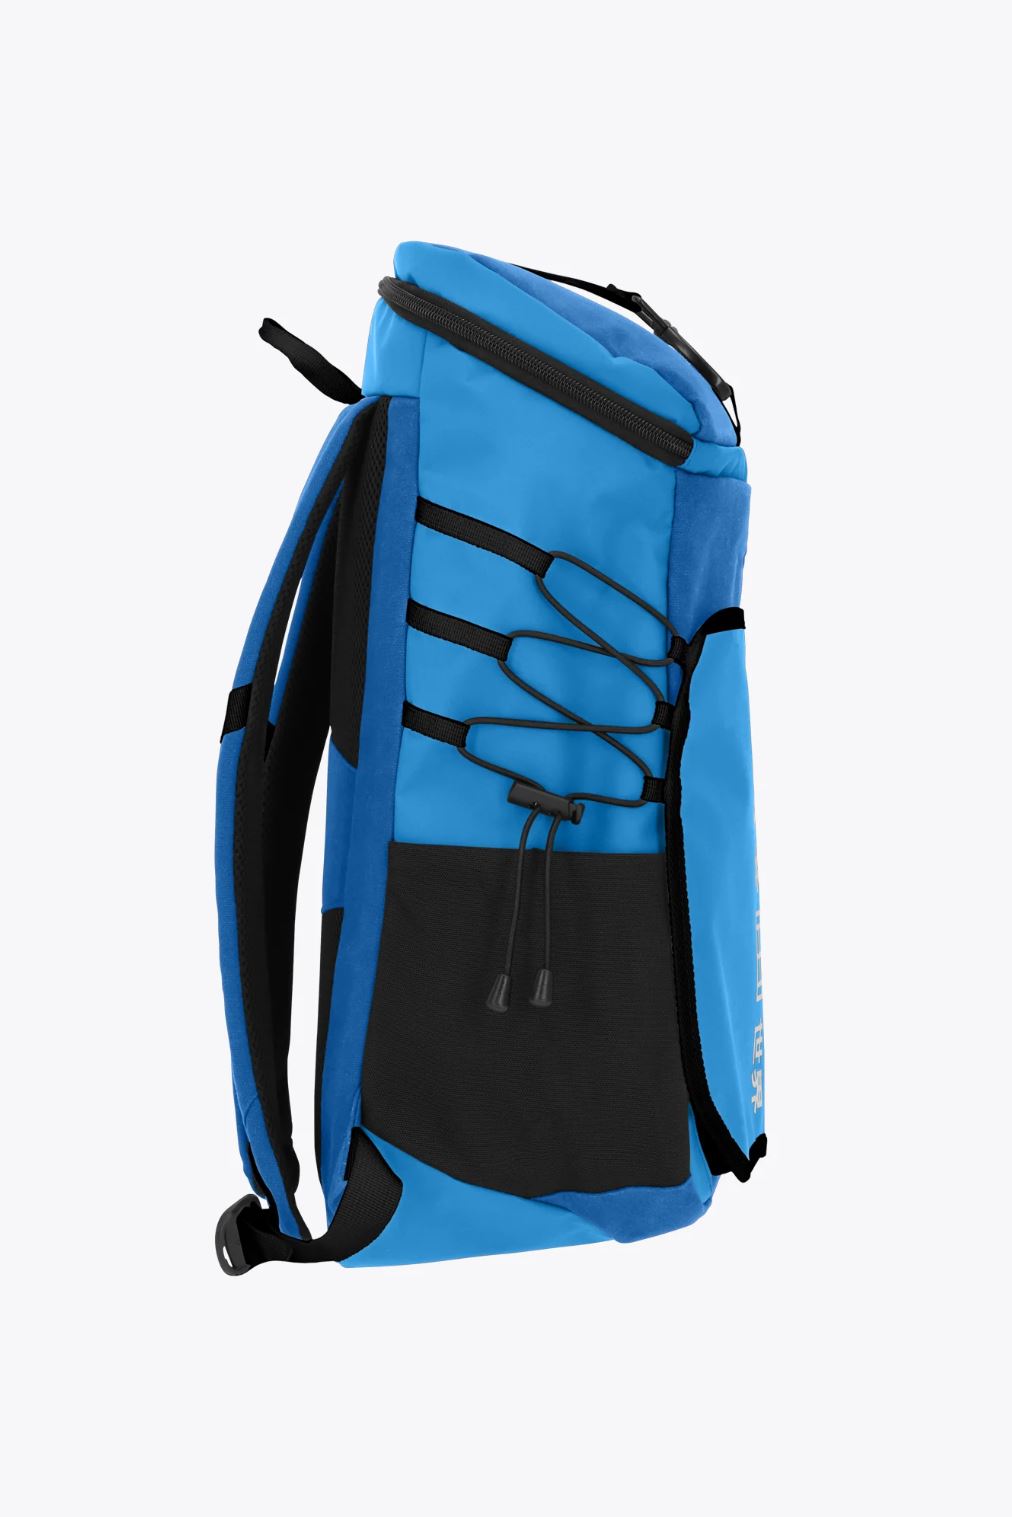 Osaka Pro Tour Backpack (Blue/White)